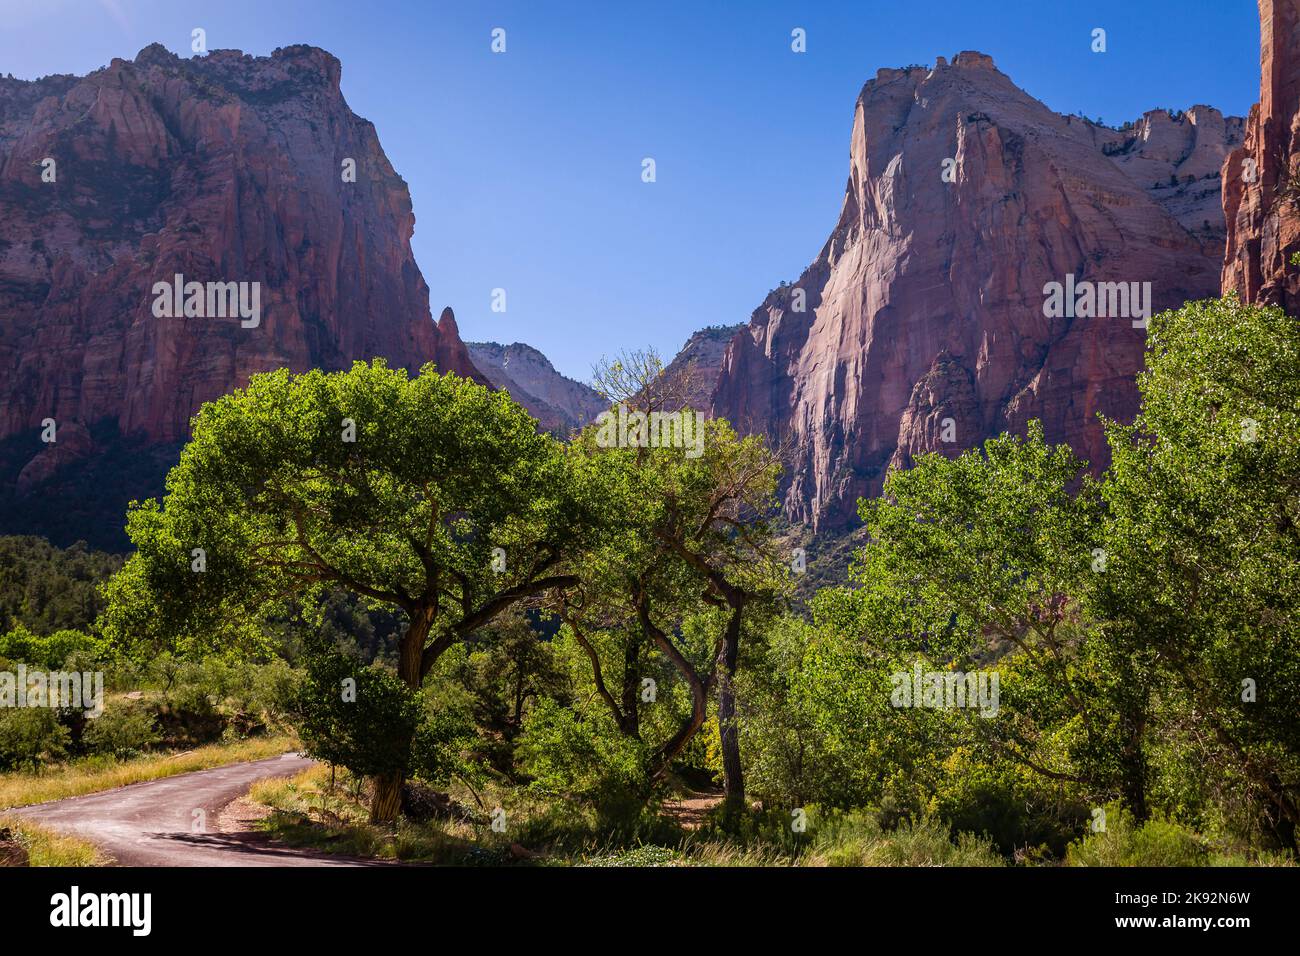 Zion National Park dramatic landscape, Utah, United States Stock Photo